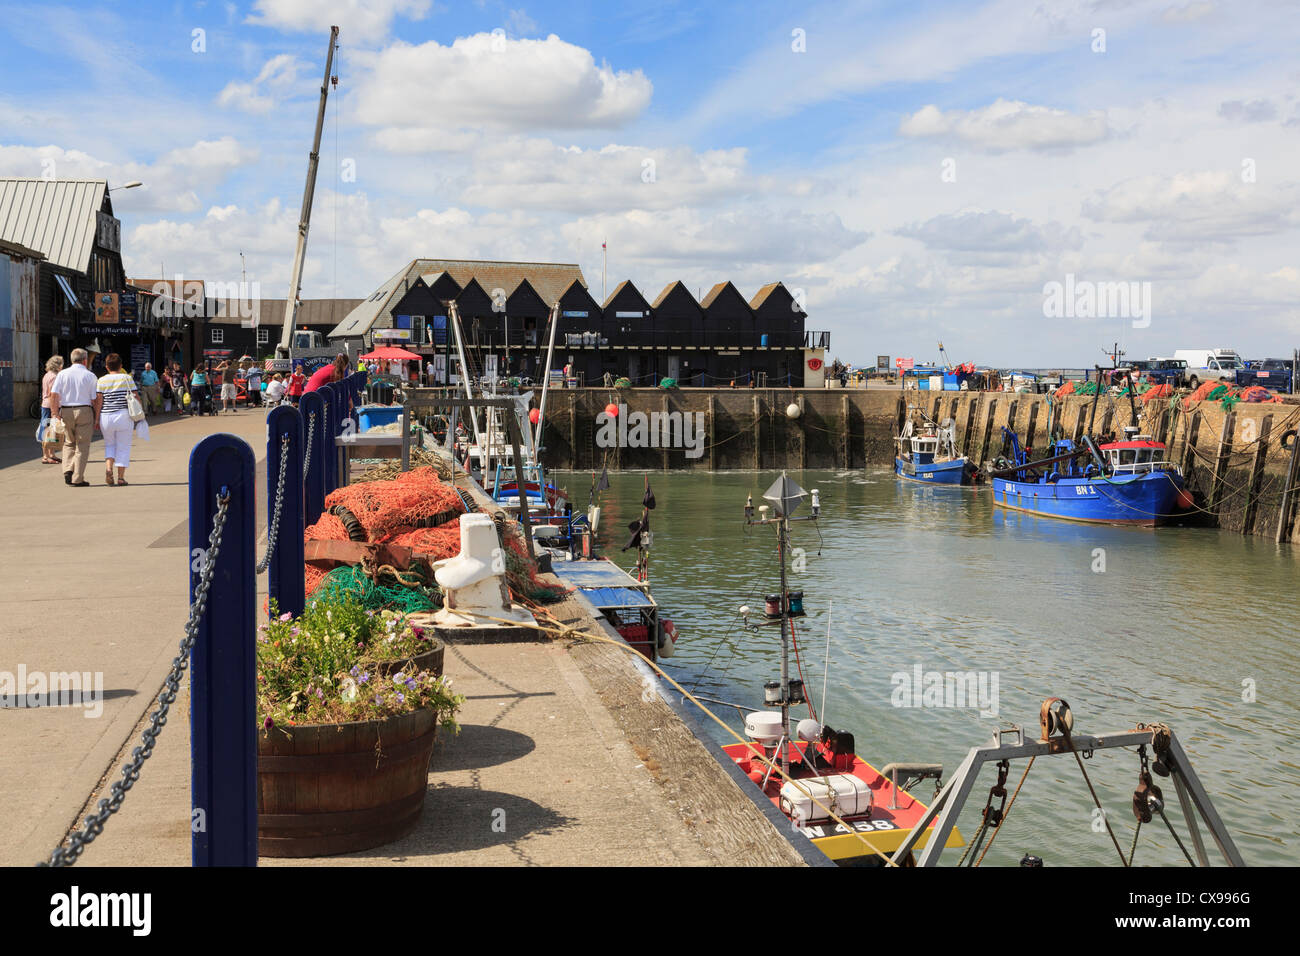 Whitstable Hafen Szene in kleinen Fischerhafen an der Küste von Kent und Themsemündung. Whitstable, Kent, England, UK, Großbritannien Stockfoto